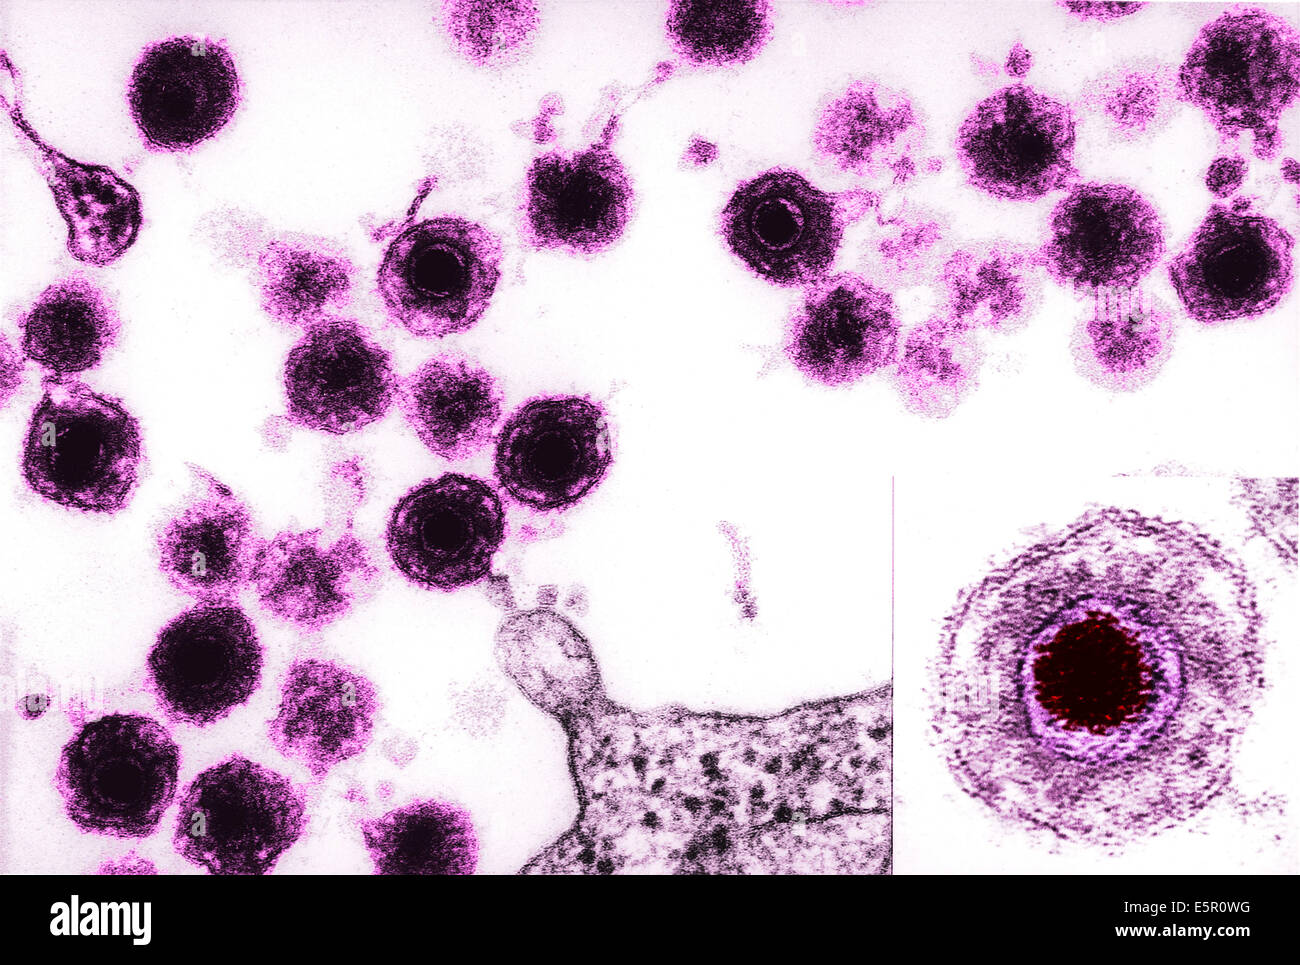 Microscopio elettronico a trasmissione (TEM) di virus di herpes umano 6 (HHV-6) precedentemente chiamato HBLV umano (b-lymphotropic virus), Foto Stock